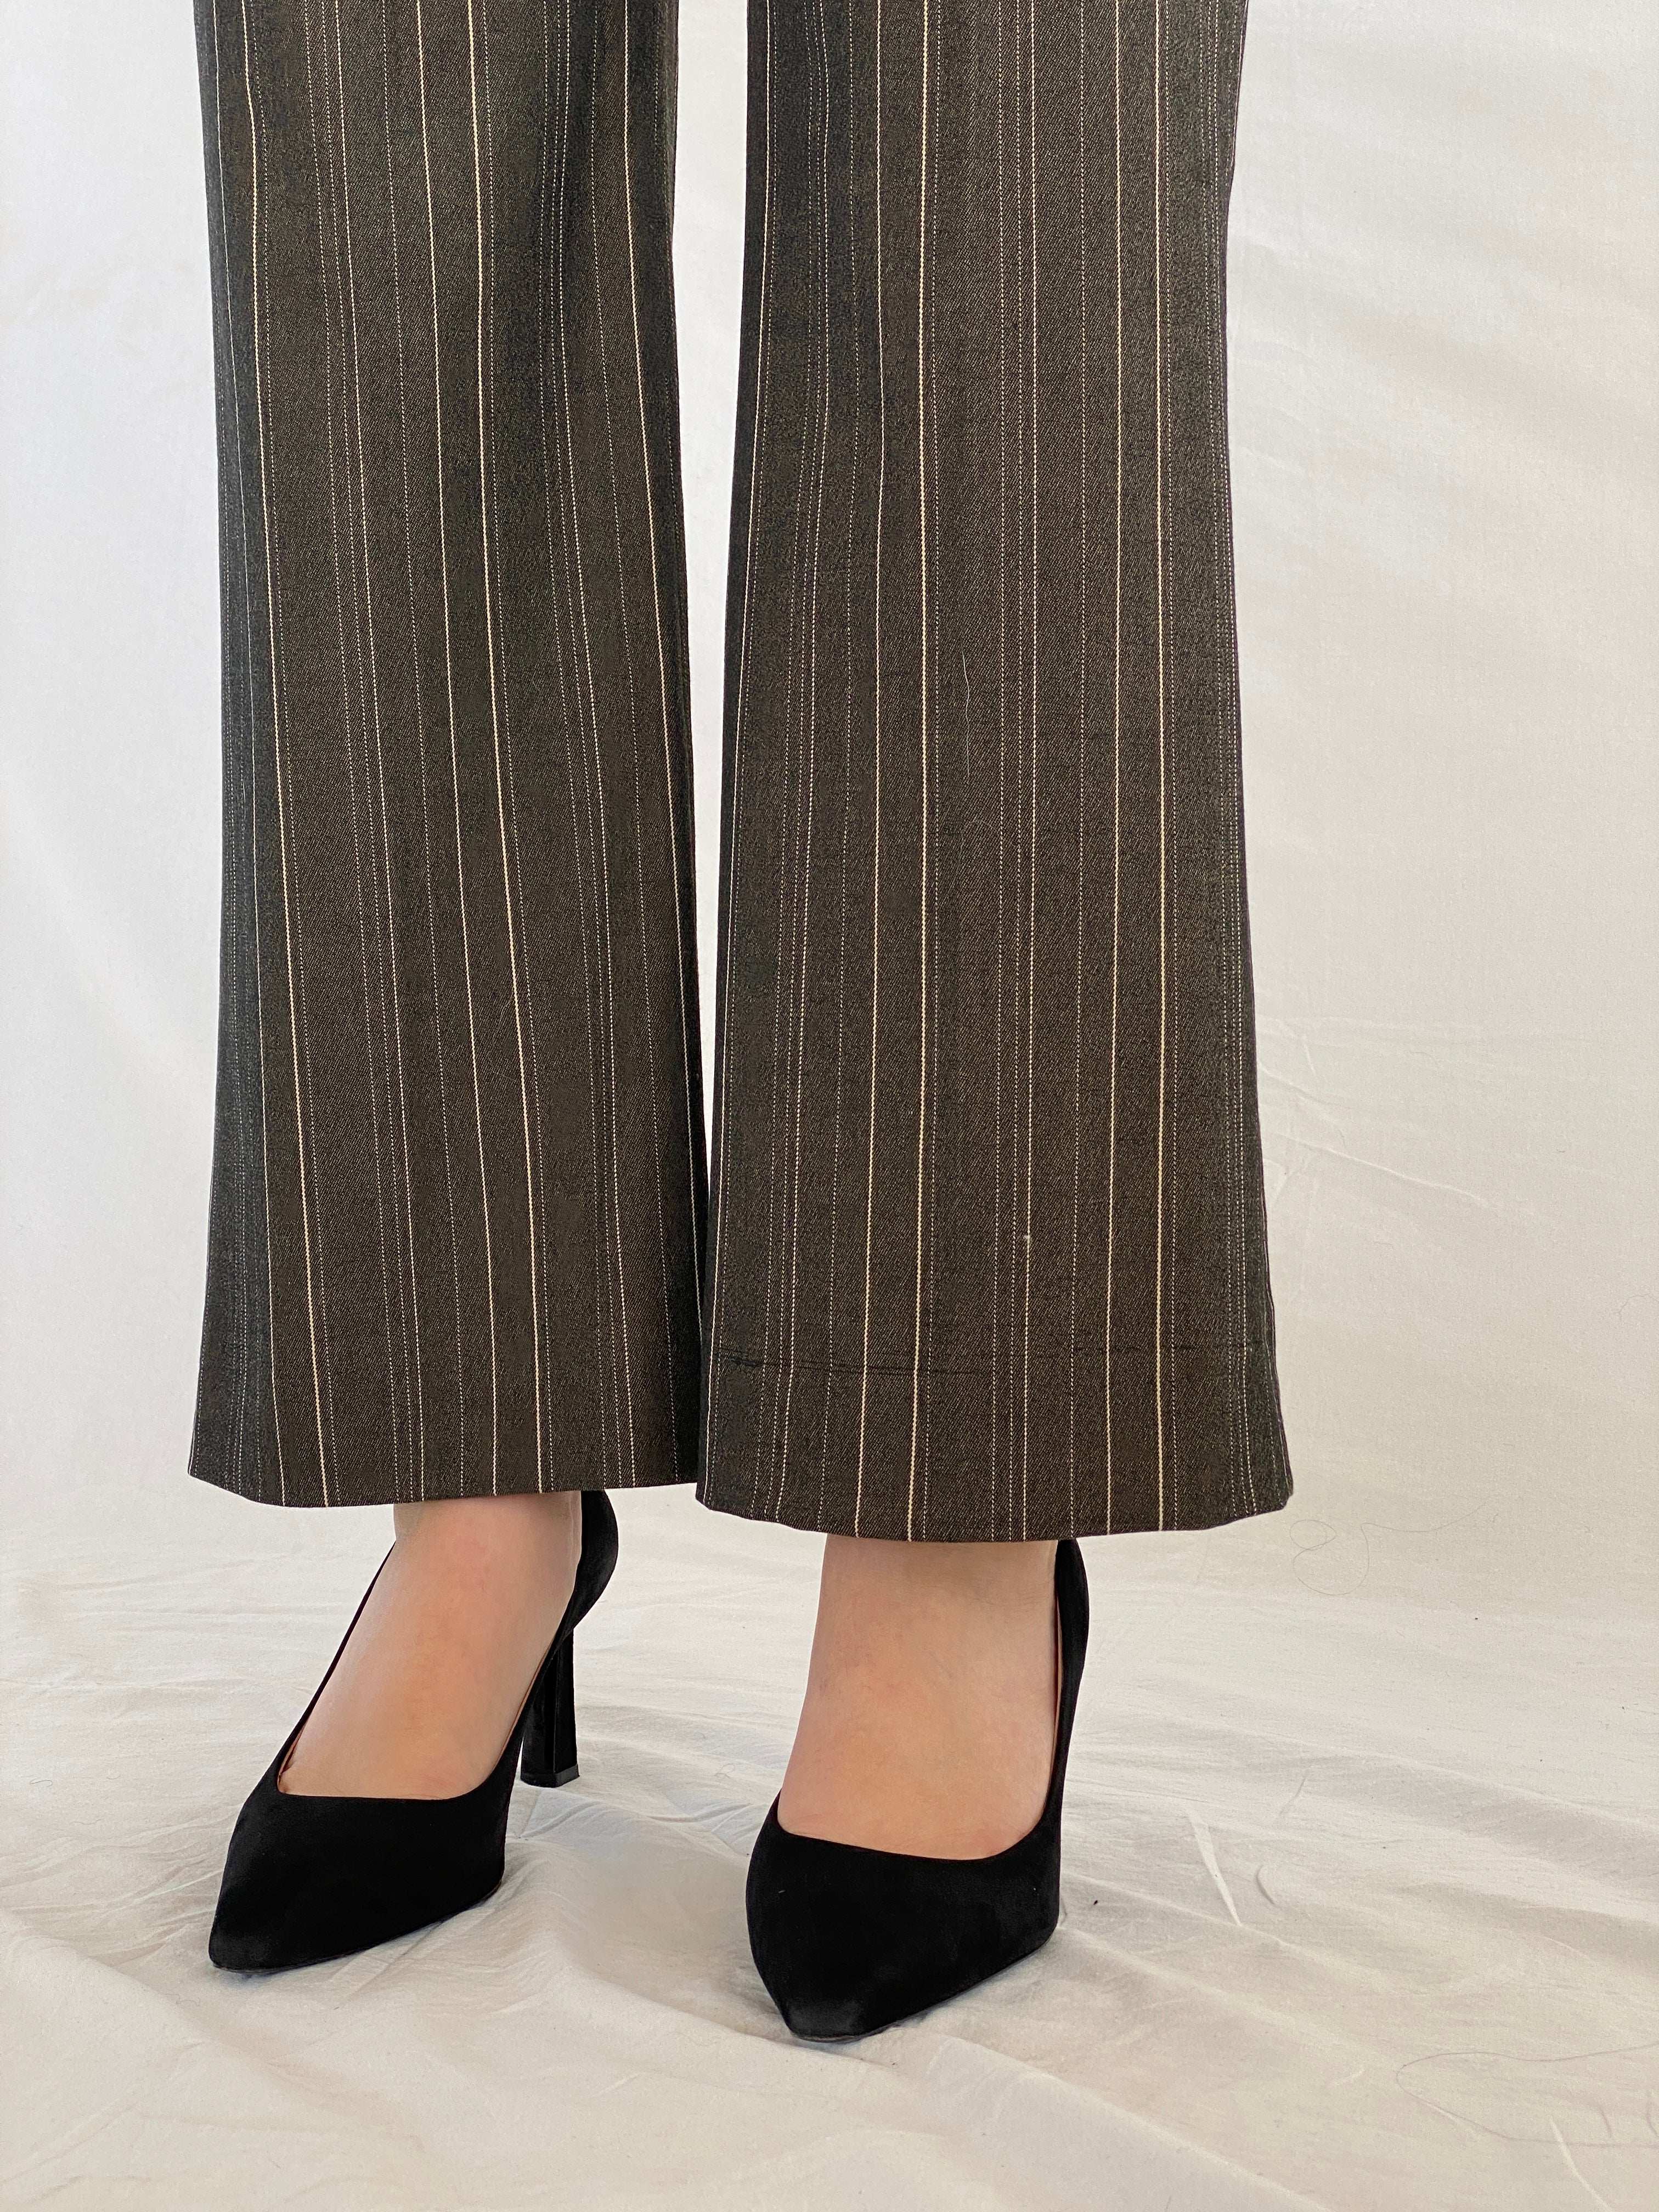 IPEKYOL Office Striped Pants - Balagan Vintage Pants 00s, Juana, NEW IN, pants, striped pants, women pants